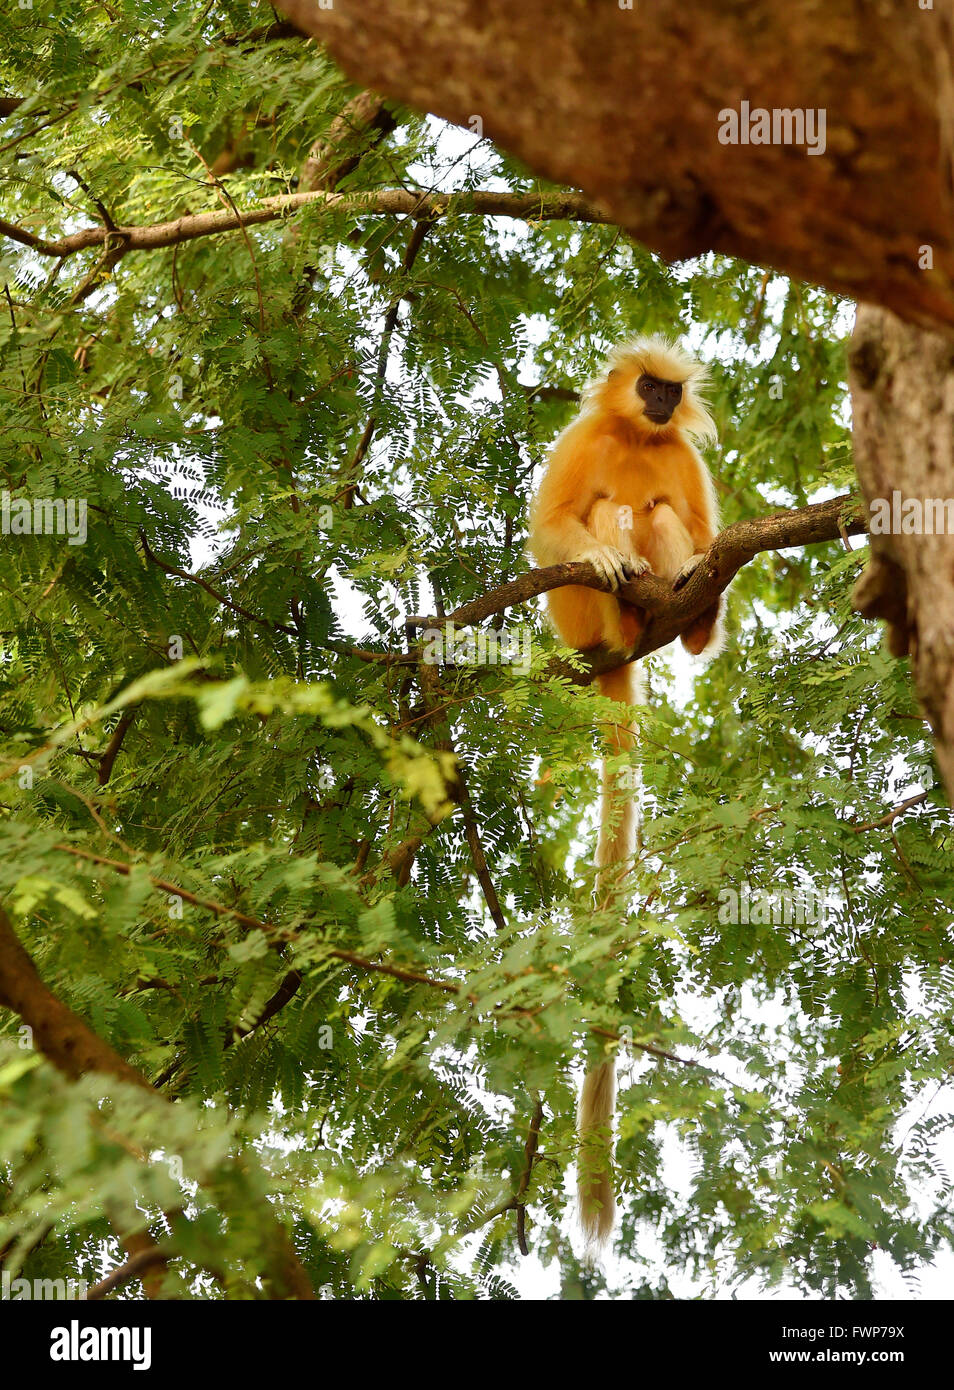 Di Gee golden langur (scimmia dorata) una scimmia del Vecchio Mondo trovato in Assam,l'India.it è uno dei più in pericolo di estinzione di specie di primati Foto Stock